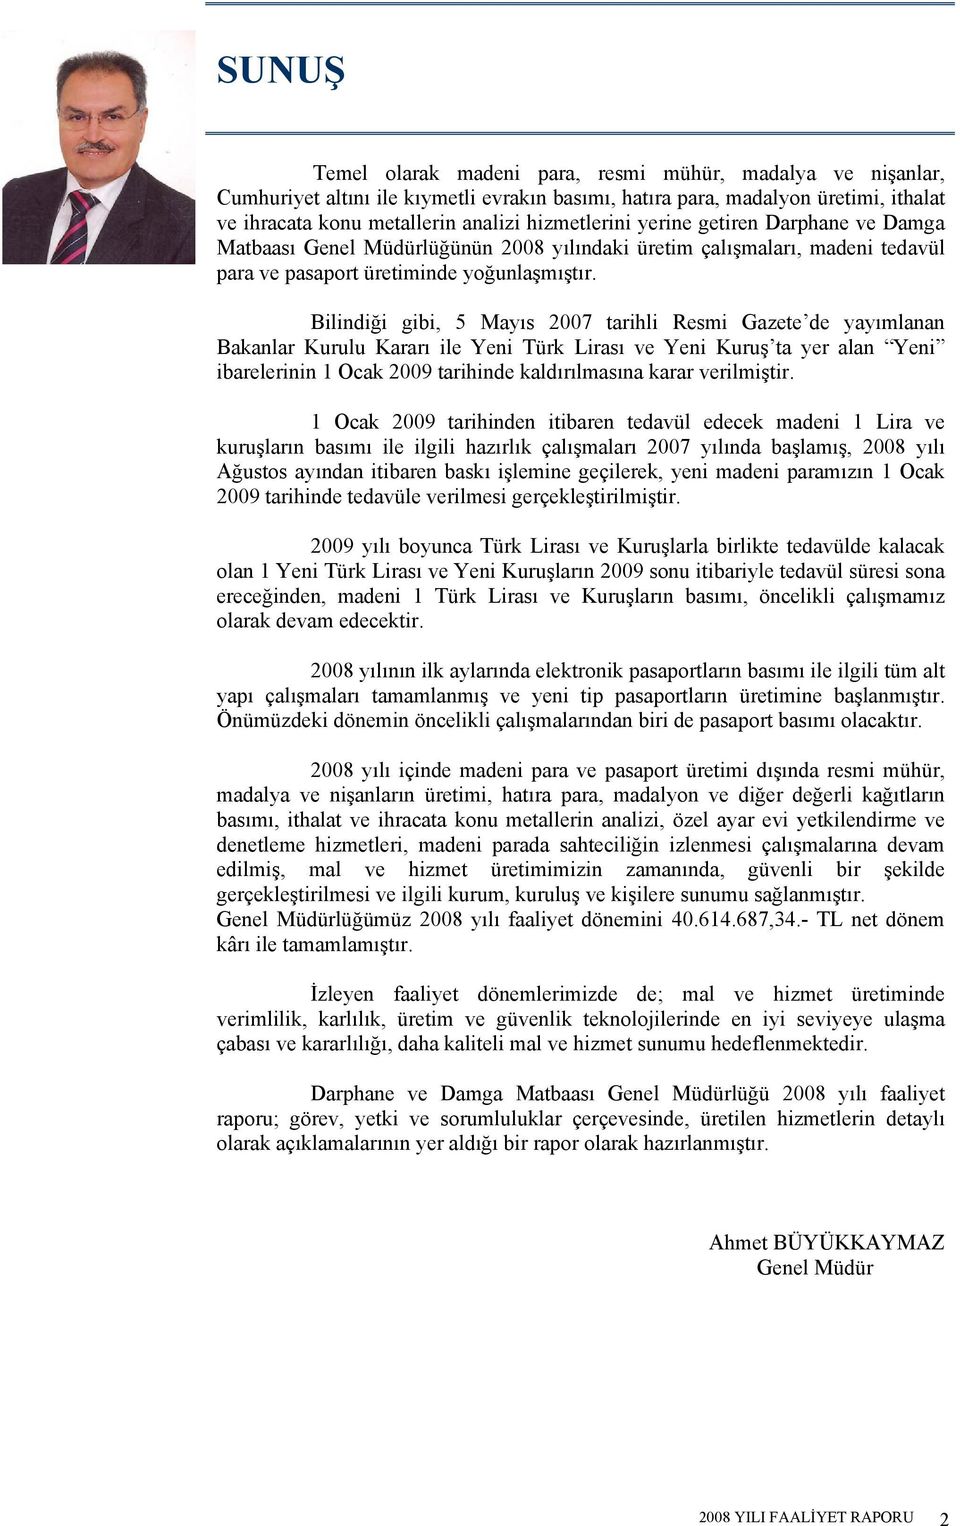 Bilindiği gibi, 5 Mayıs 2007 tarihli Resmi Gazete de yayımlanan Bakanlar Kurulu Kararı ile Yeni Türk Lirası ve Yeni Kuruş ta yer alan Yeni ibarelerinin 1 Ocak 2009 tarihinde kaldırılmasına karar